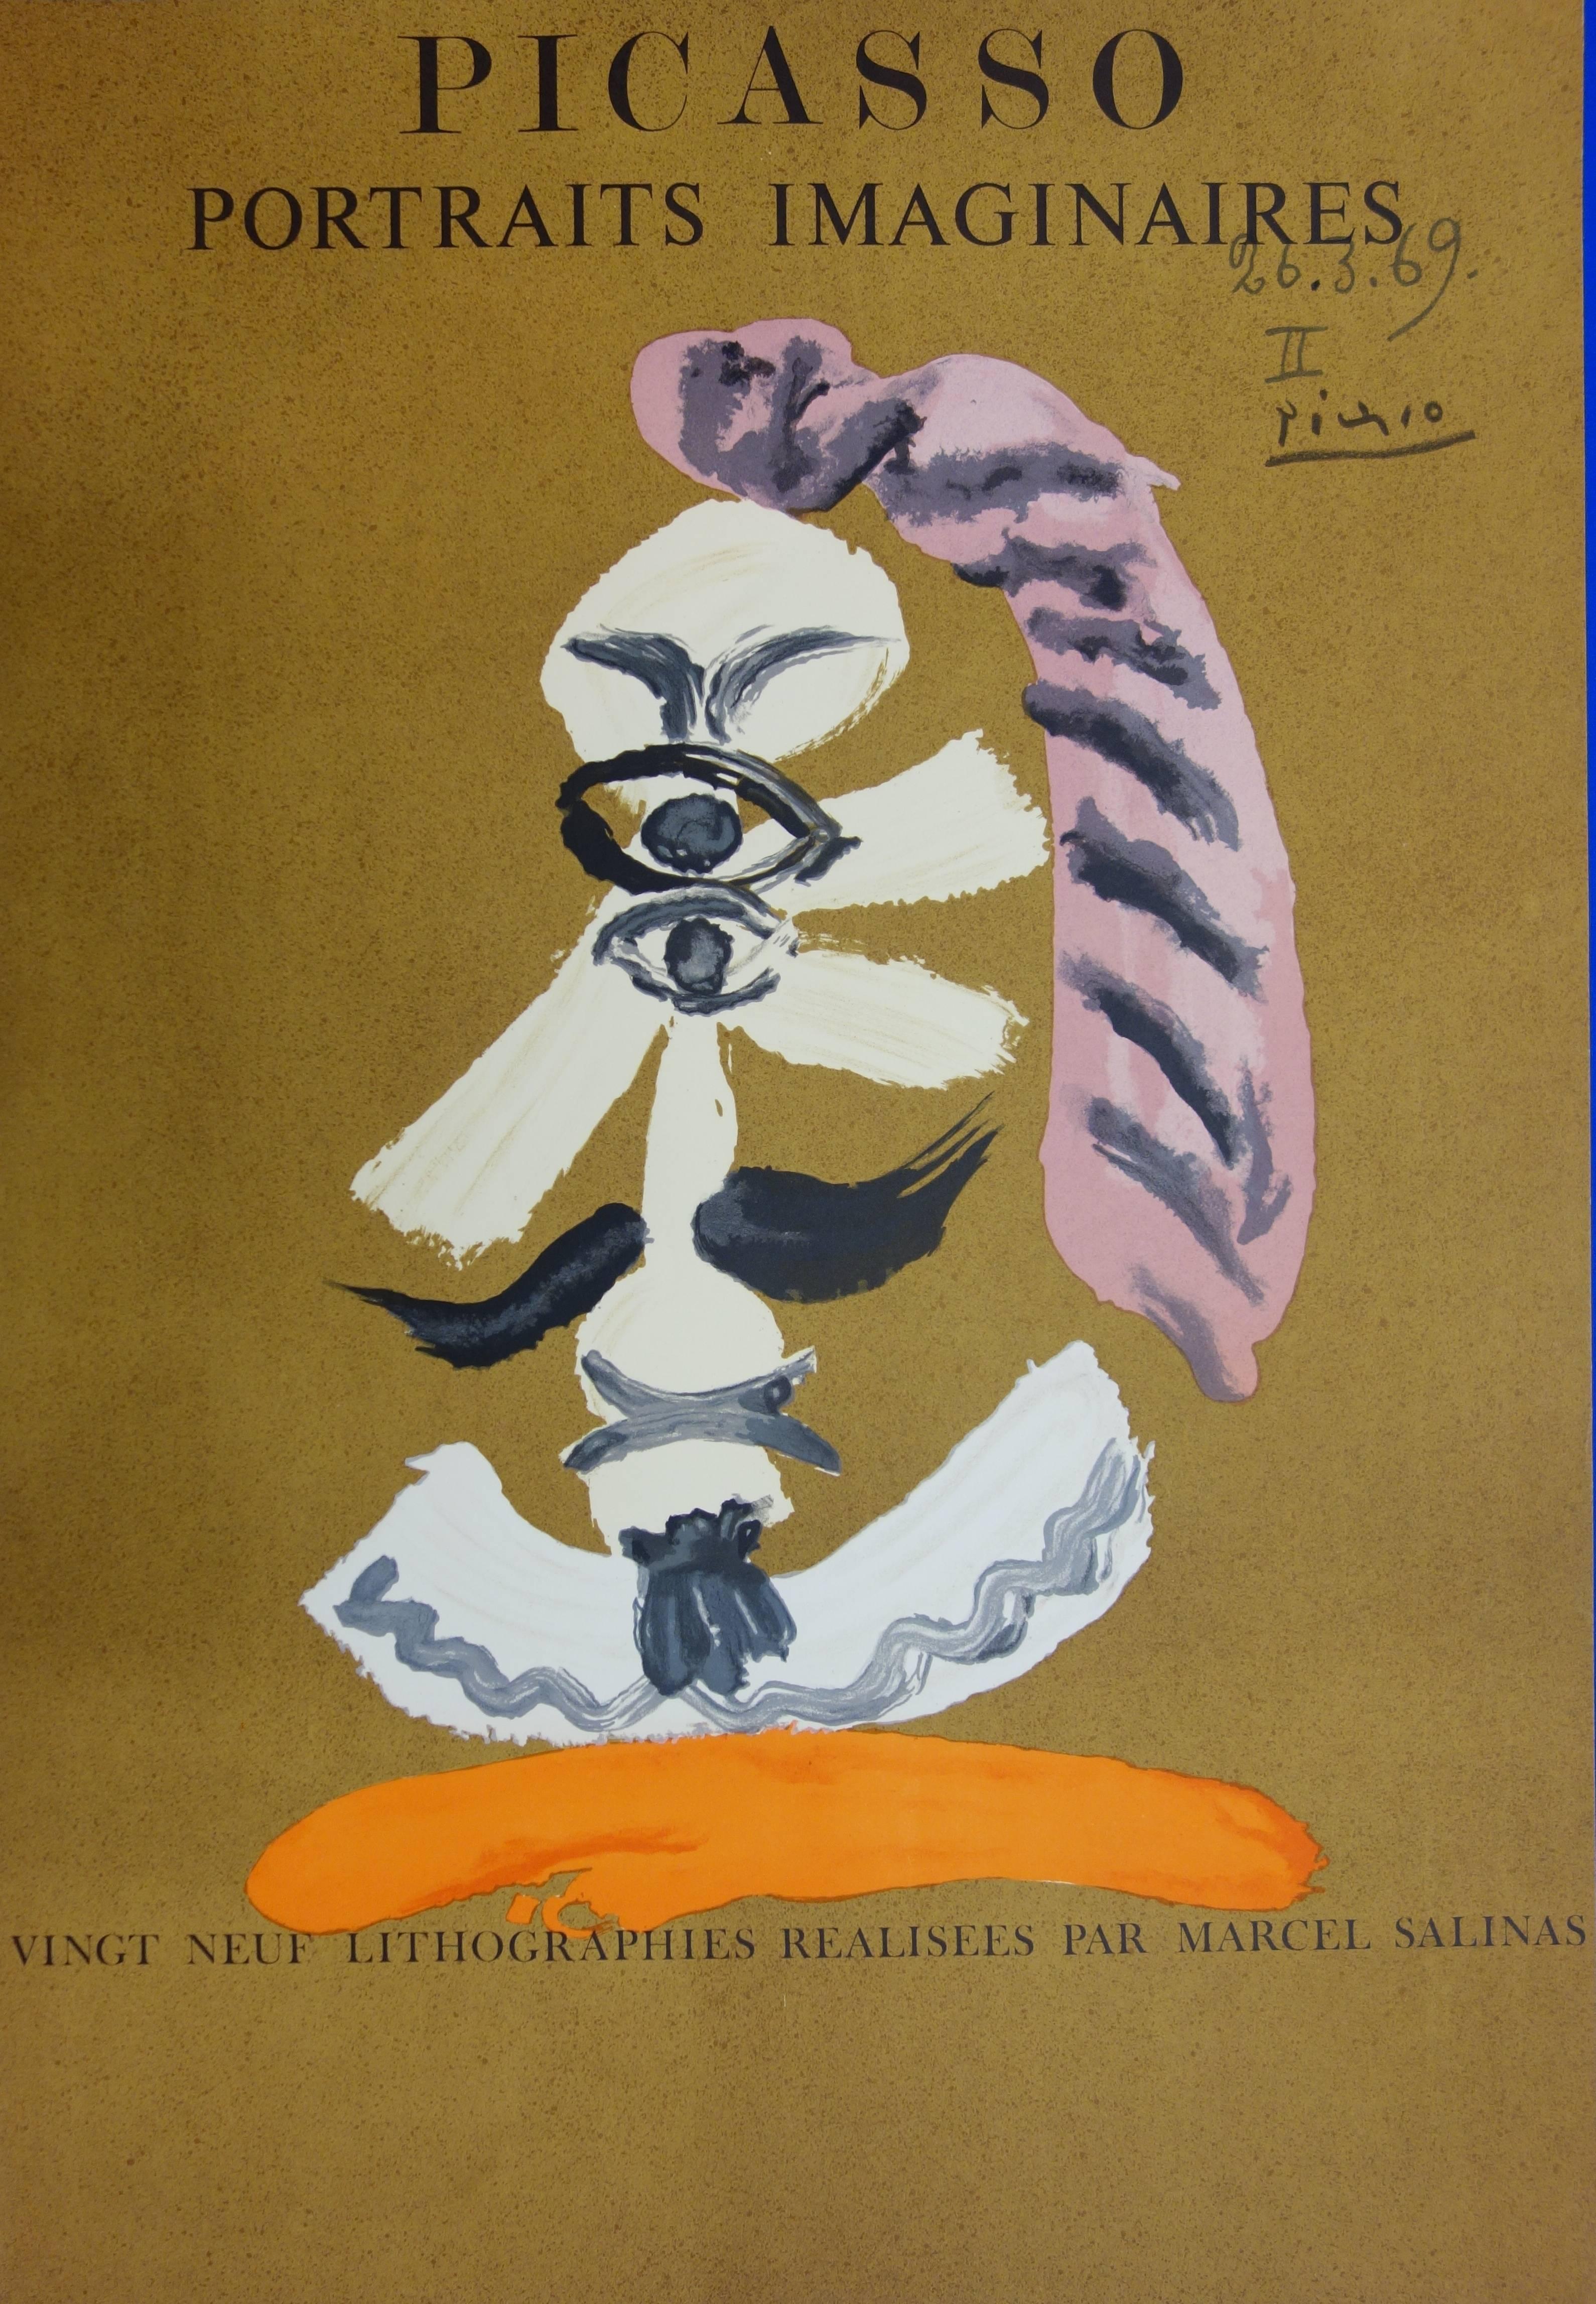 (after) Pablo Picasso Portrait Print - Imaginary Portraits : Cubist Portrait - Lithograph - 1971